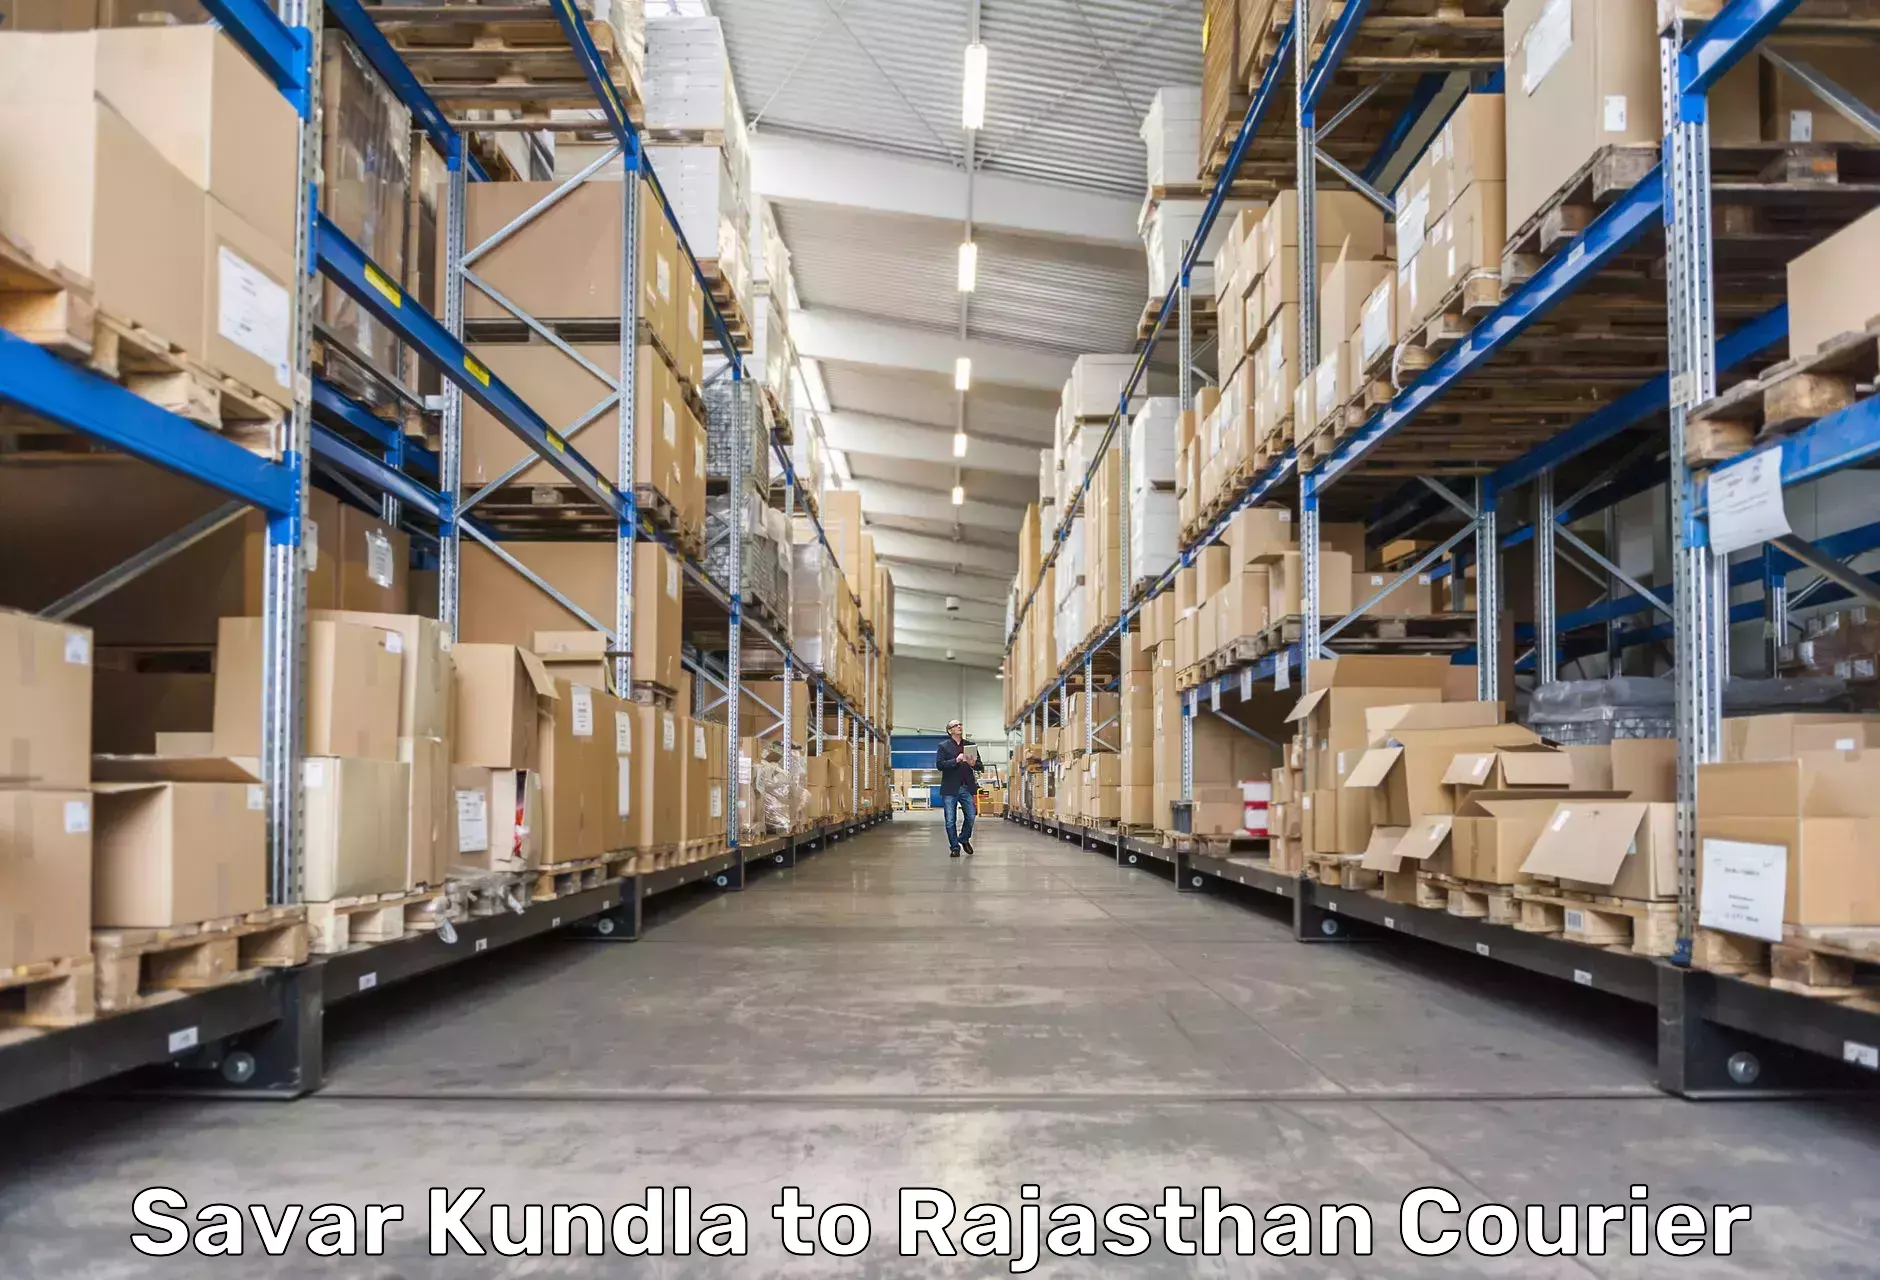 Affordable parcel service Savar Kundla to Dholpur